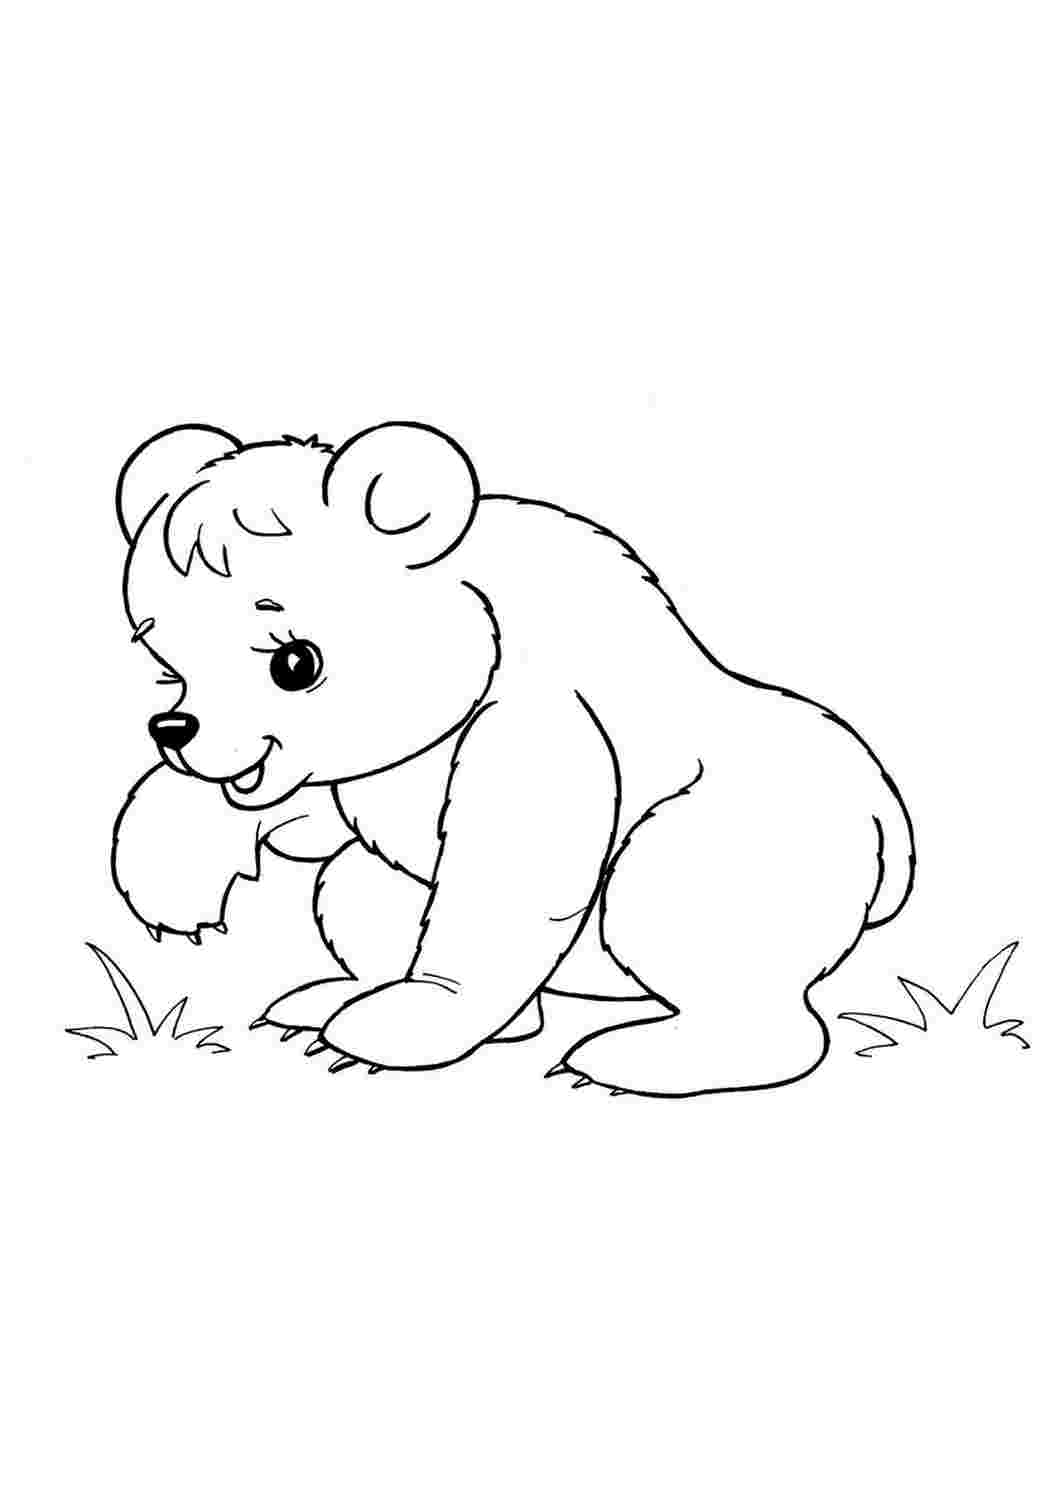 Распечатка медведя. Раскраска. Медвежонок. Медведь раскраска. Раскраски животных для детей. Медведь раскраска для детей.